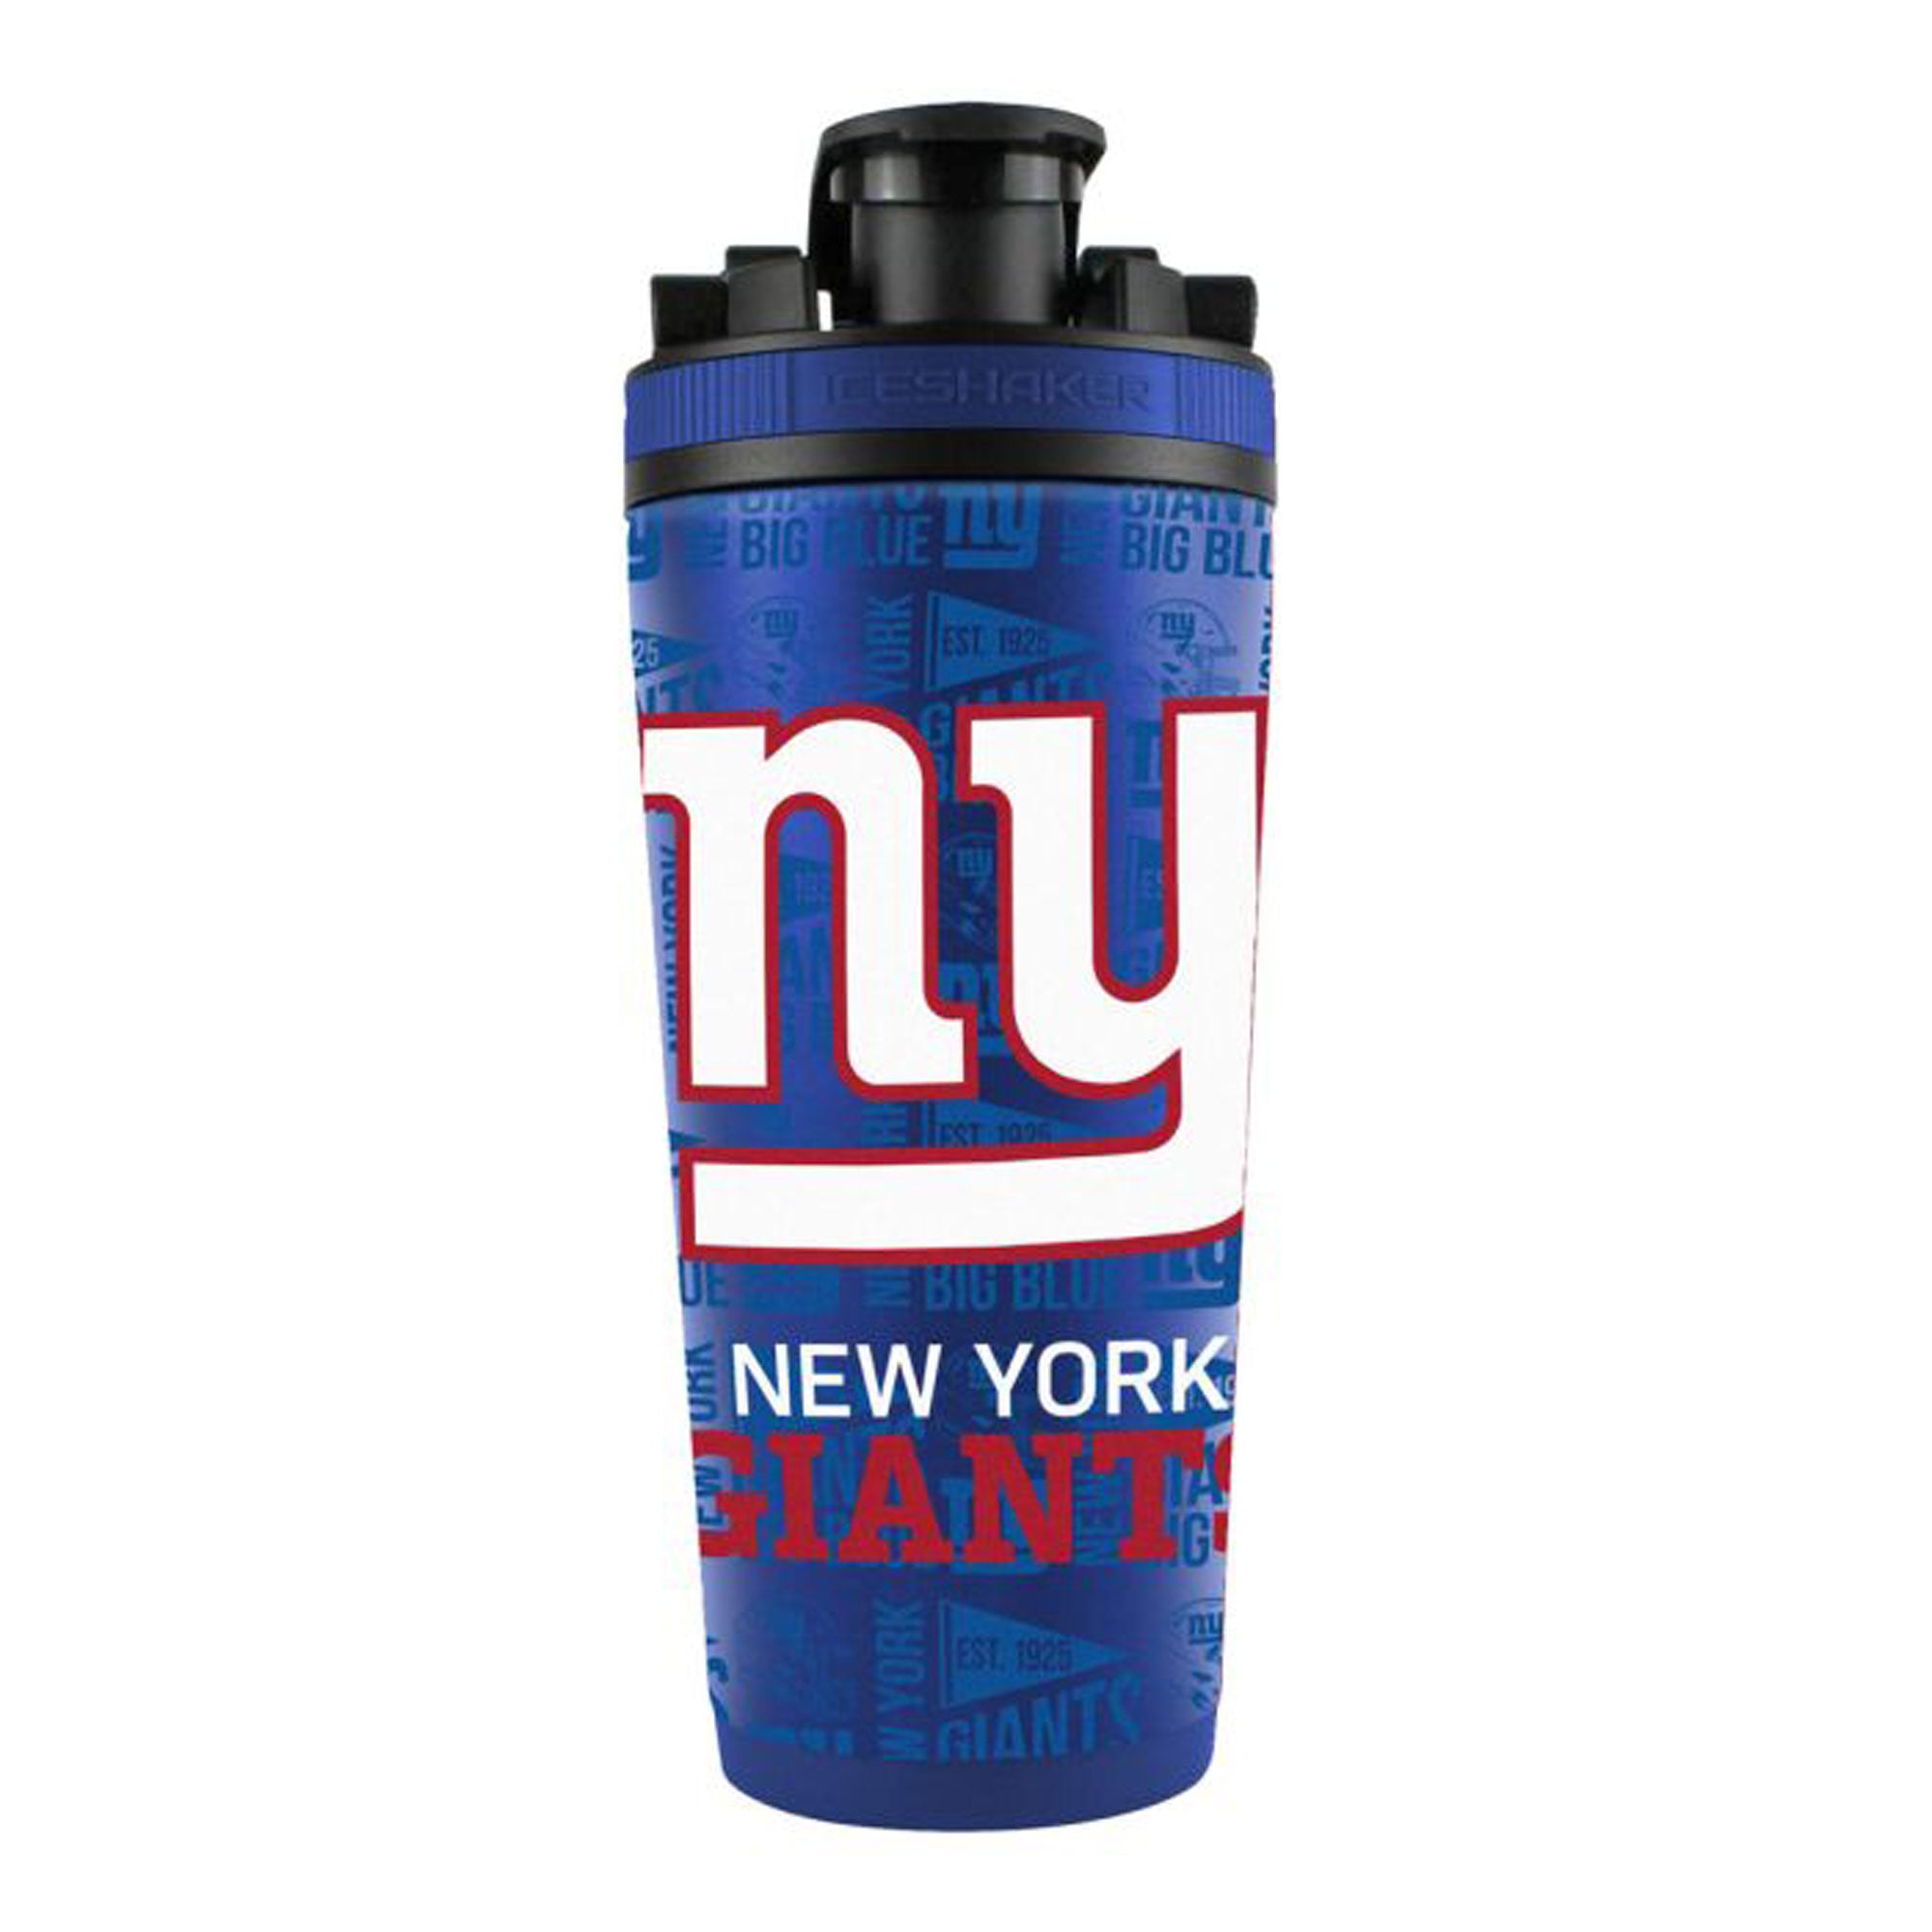 Officially Licensed New York Giants 4D Ice Shaker